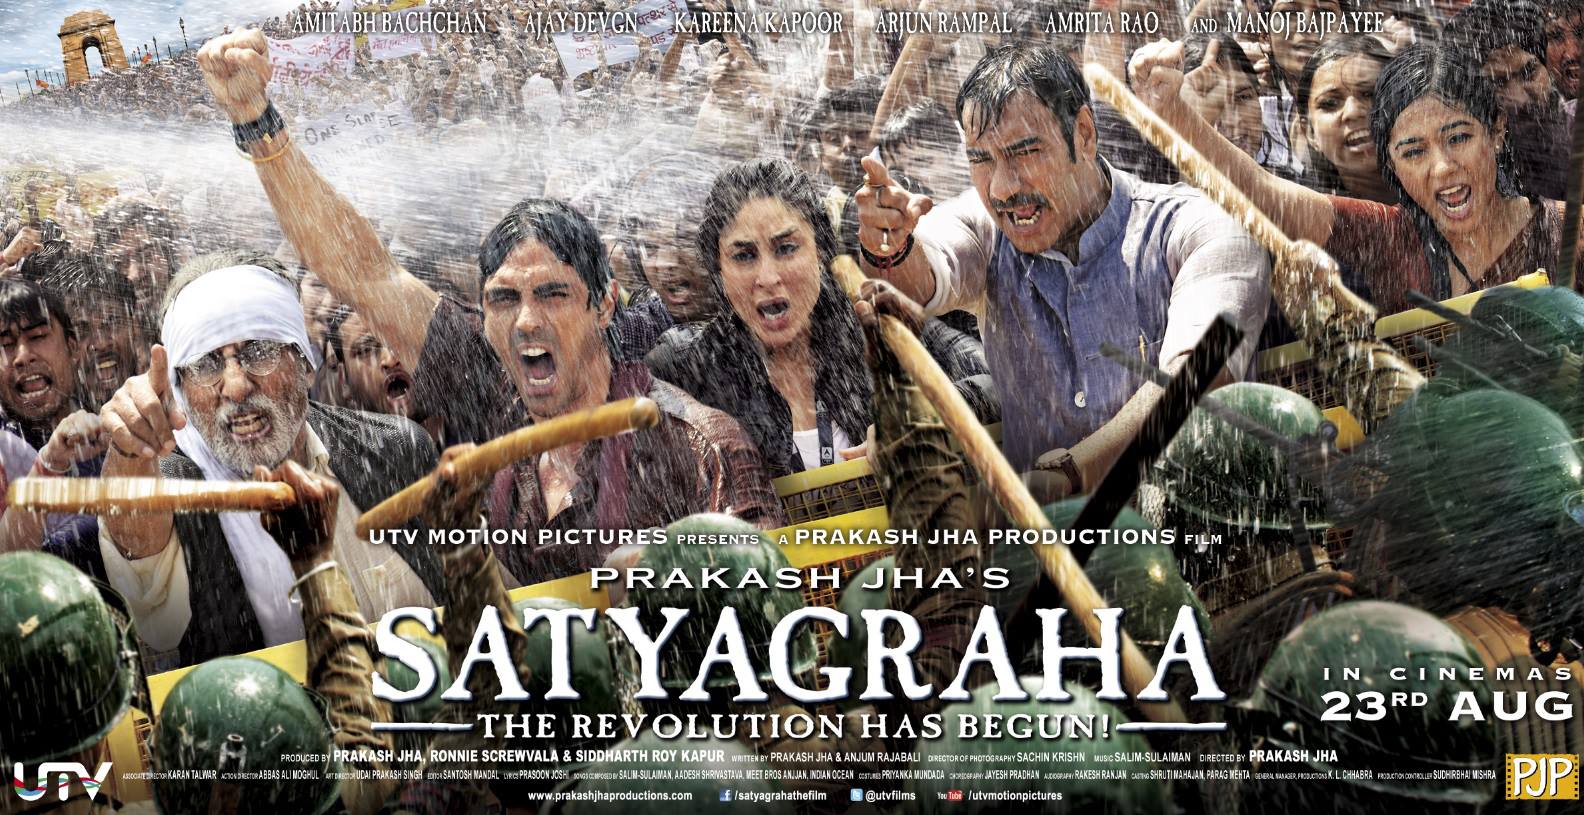 affiche du film Satyagraha